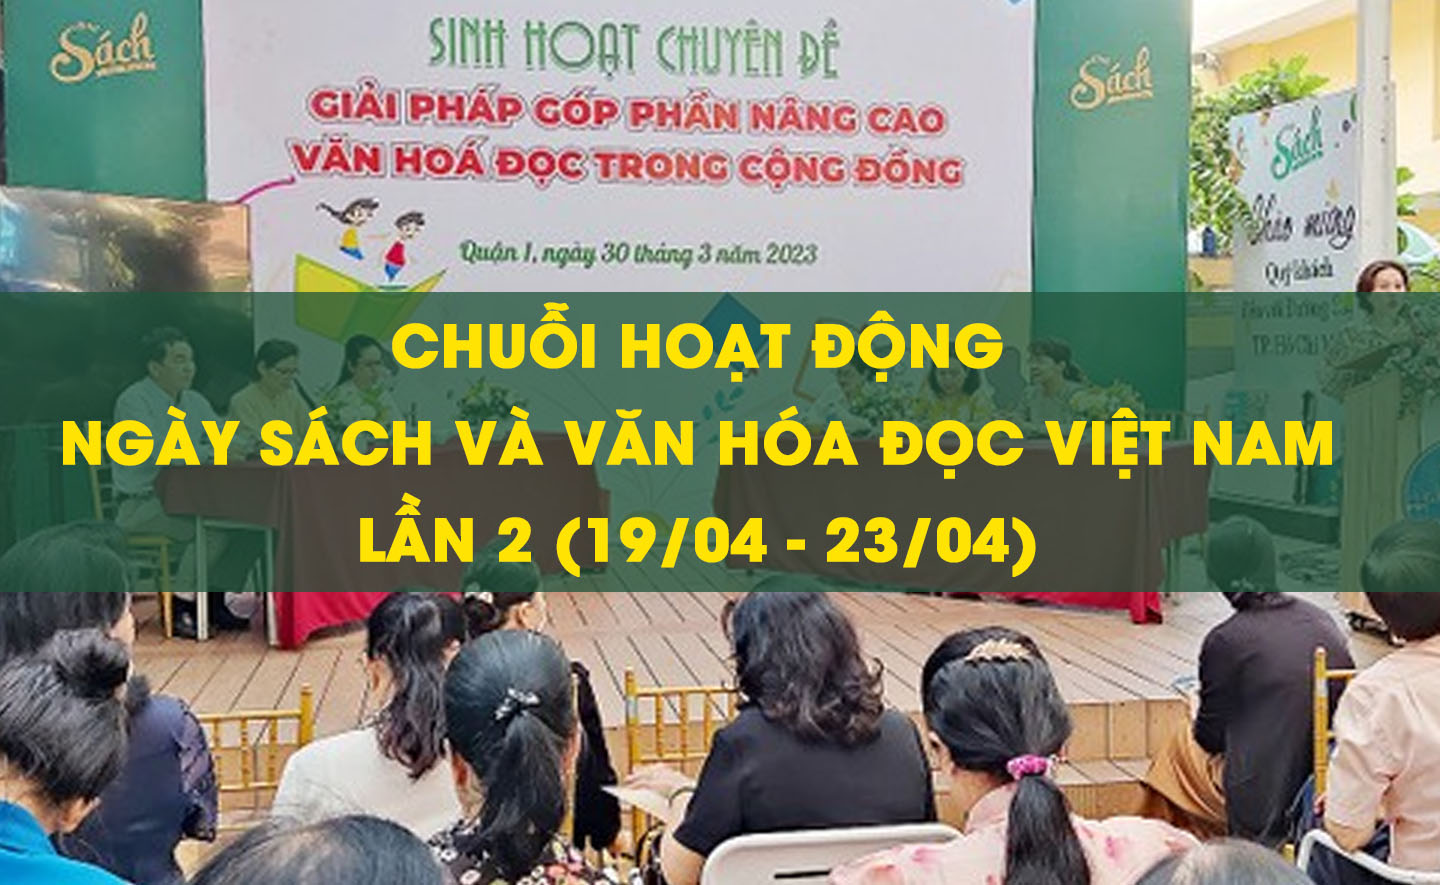 Những hoạt động đáng chú ý trong chuỗi Ngày Sách và Văn hóa đọc Việt Nam lần 2 tại TP HCM